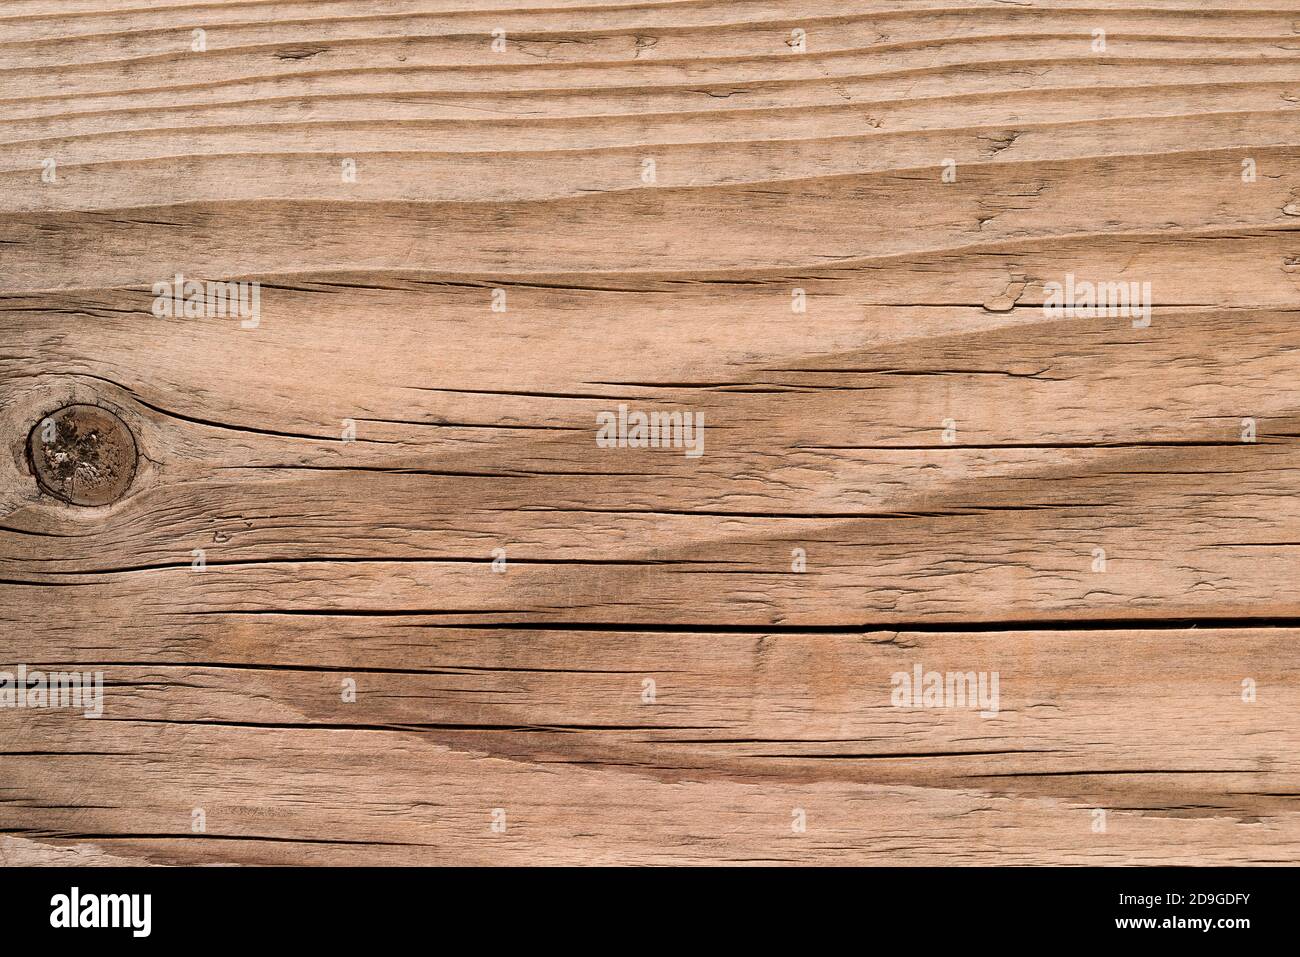 Hintergrund mit Holzstruktur. Draufsicht auf Vintage Holztisch mit Rissen. Hellbraune Oberfläche aus altem Holz mit natürlicher Farbe Stockfoto